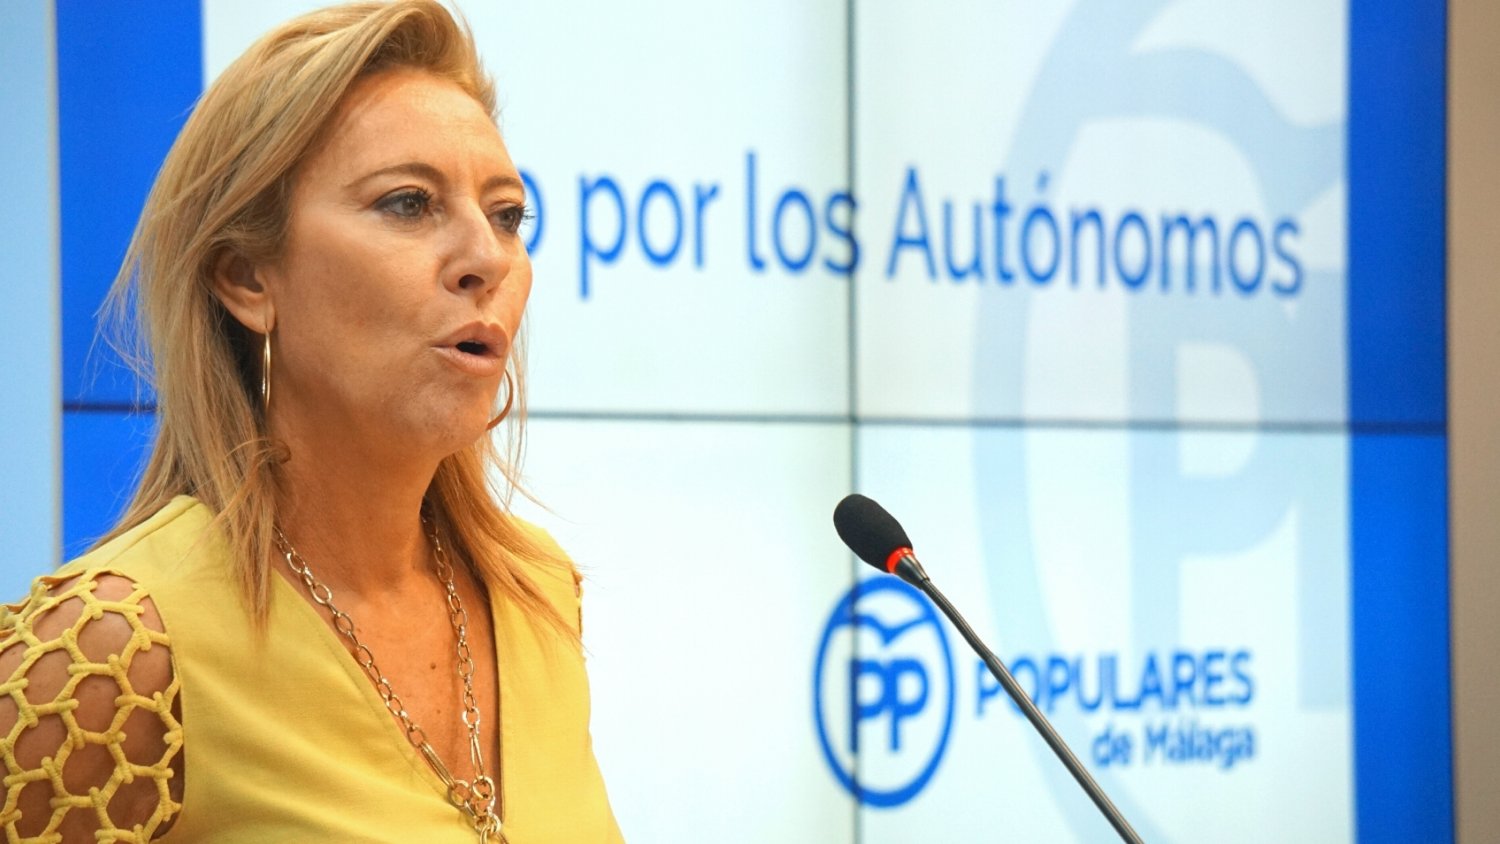 Carolina España destaca el tirón de Málaga en la creación de autoempleo con 30 nuevos autónomos al día